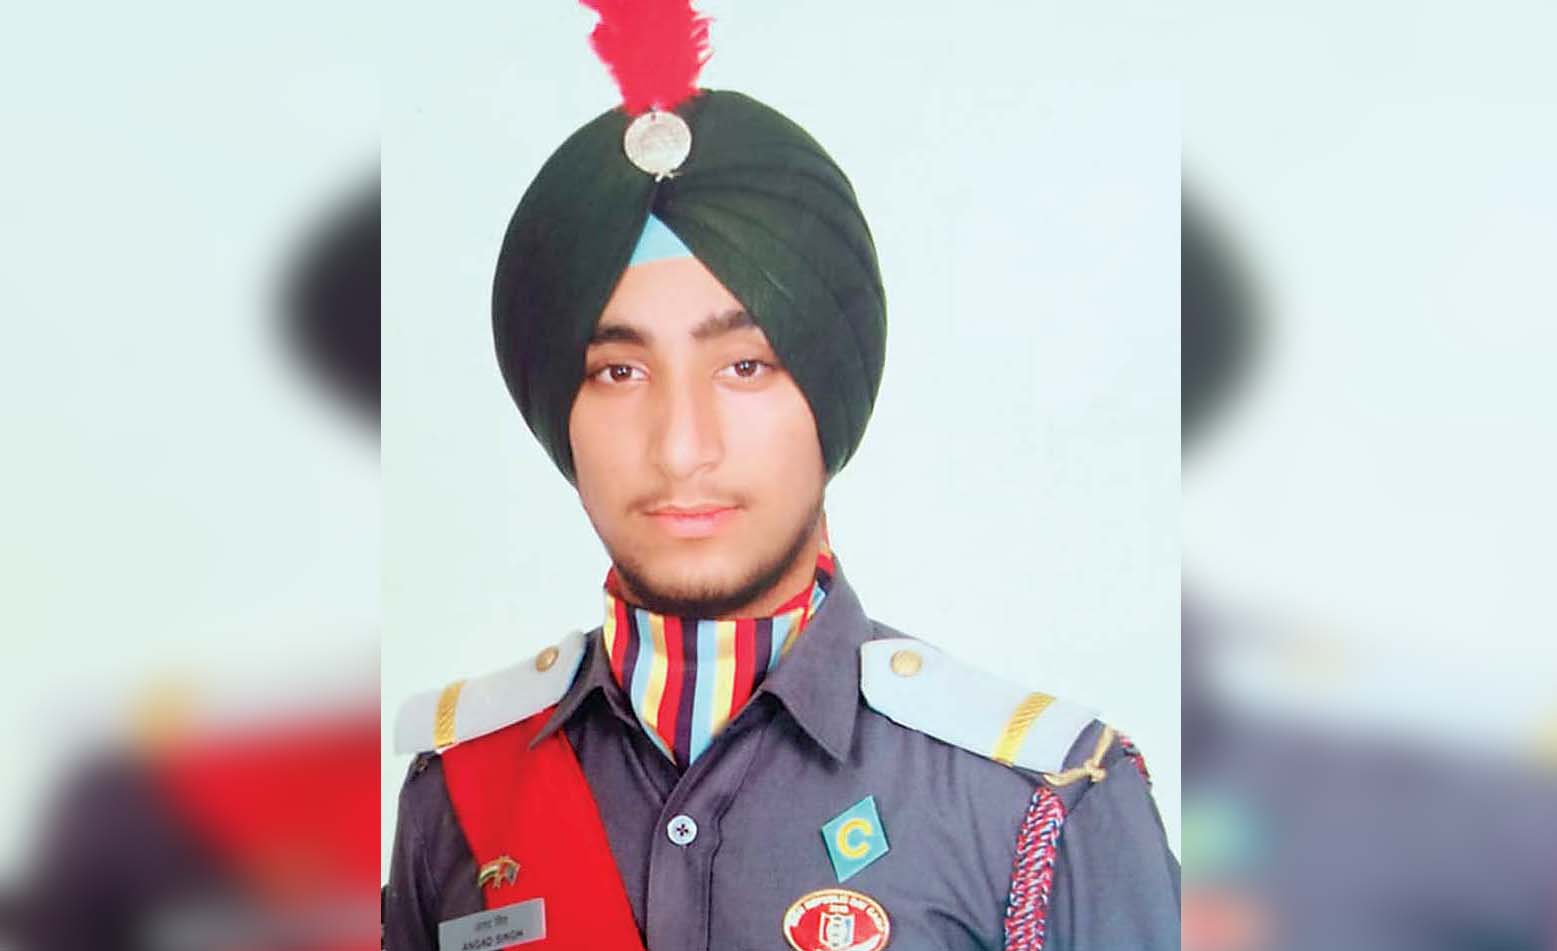 भारतीय सेना में अफसर बनेंगे मंडी के अंगद सिंह